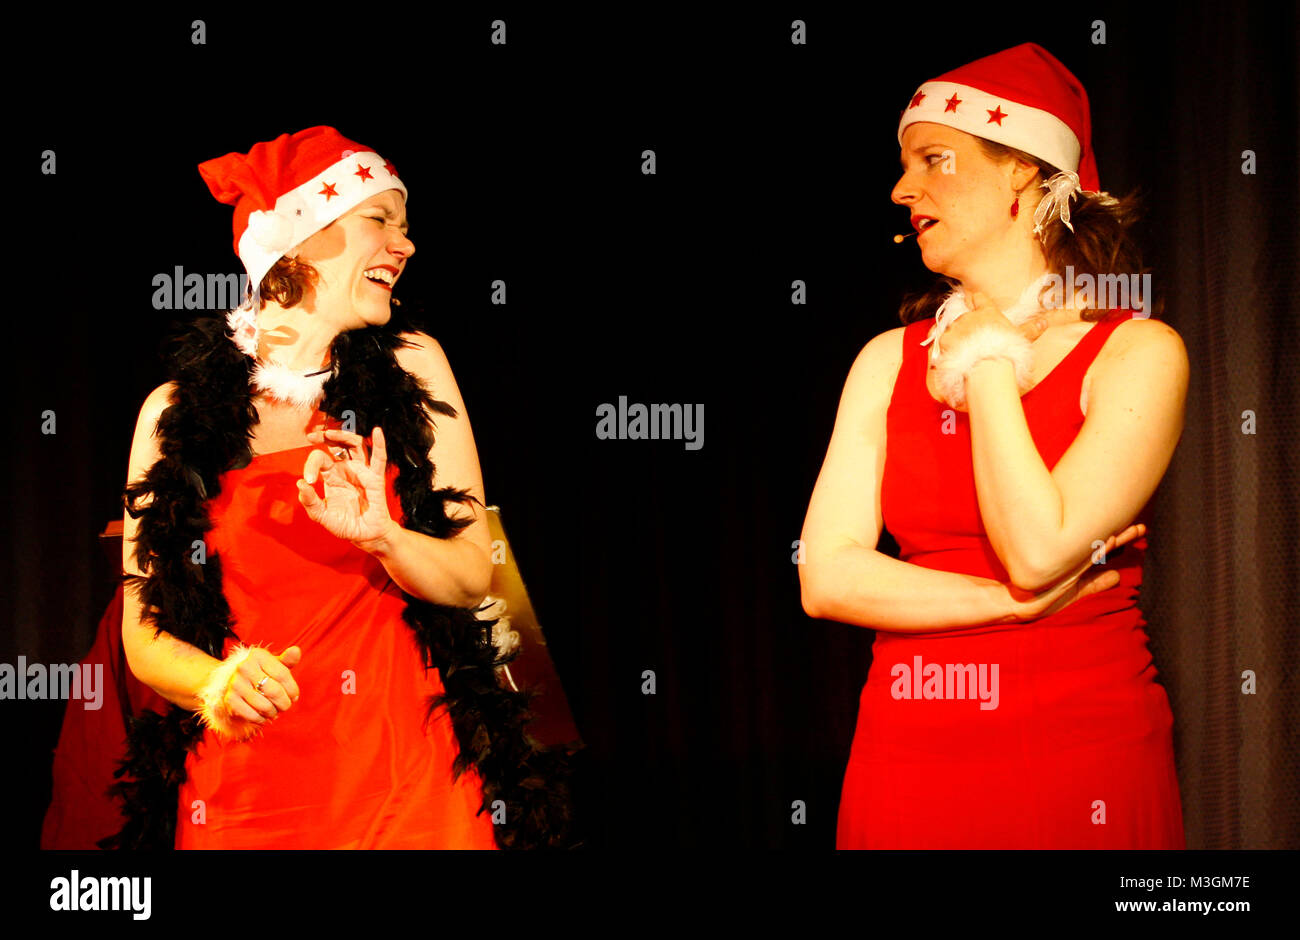 Fritzi und Suse Comedy Duo aus dem Ruhrpott m Hamburger Foolsgarden  mit ihrem vorweihnachtliche Programm -   Advent, Advent, die Fritzi brennt  Unser schräg besinnliches Comedy-Weihnachtsprogramm!  In bekannt schön und durchgeknallter Manier, verzaubern Suse und Fritzi nun auch ihr Publikum in die Wunderwelt des Weihnachtsfestes. Ja - auch diese beiden Damen feiern Weihnachten und versuchen sich selbst in vorweihnachtliche Stimmung zu versetzen. Dass das natürlich nicht immer so läuft, wie man sich das vorstellt, verspricht ja schon der Programmtitel 'Advent, Advent, die Fritzi brennt'. Neben Stock Photo